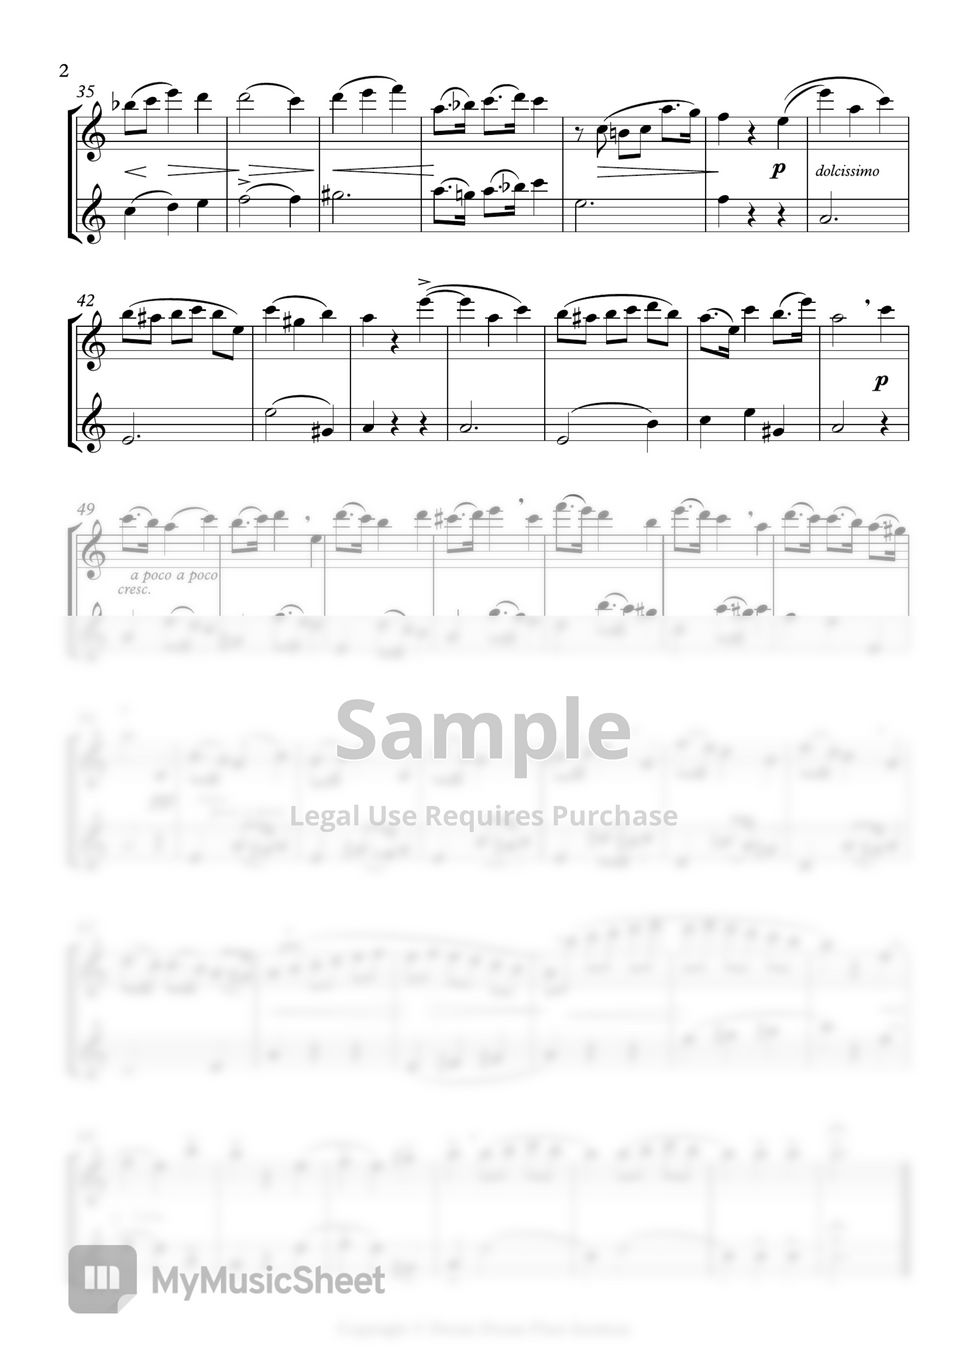 New Gariboldi Op.131 Flute Etude Duet - No.02